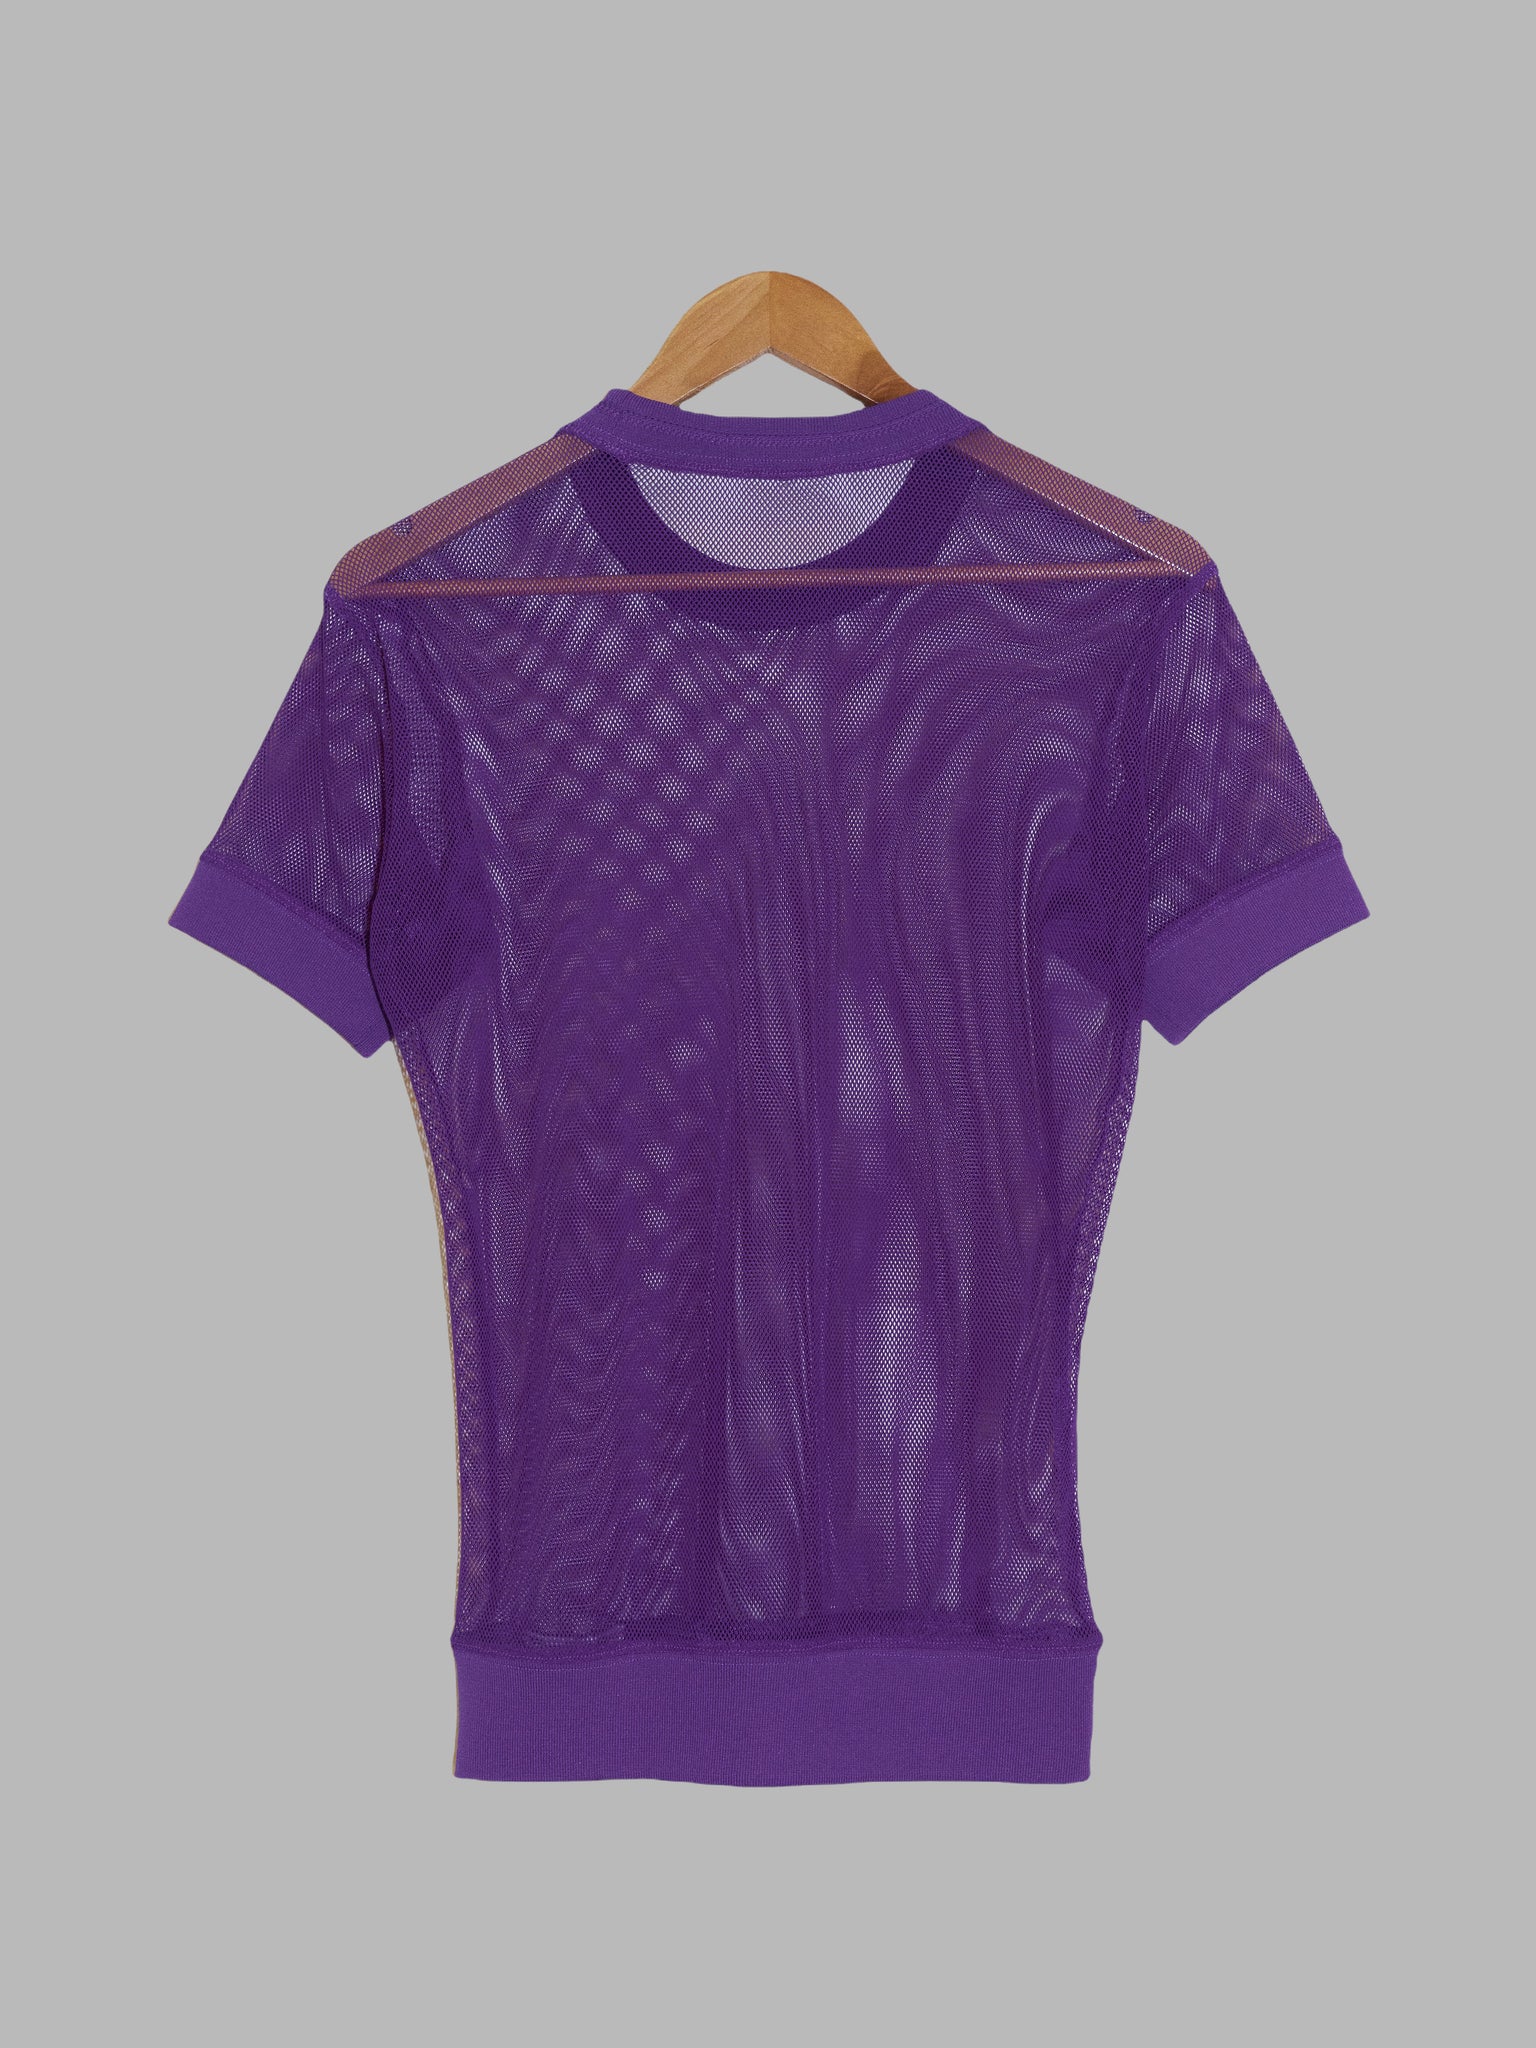 Issey Miyake Men sheer purple nylon mesh t-shirt - S M